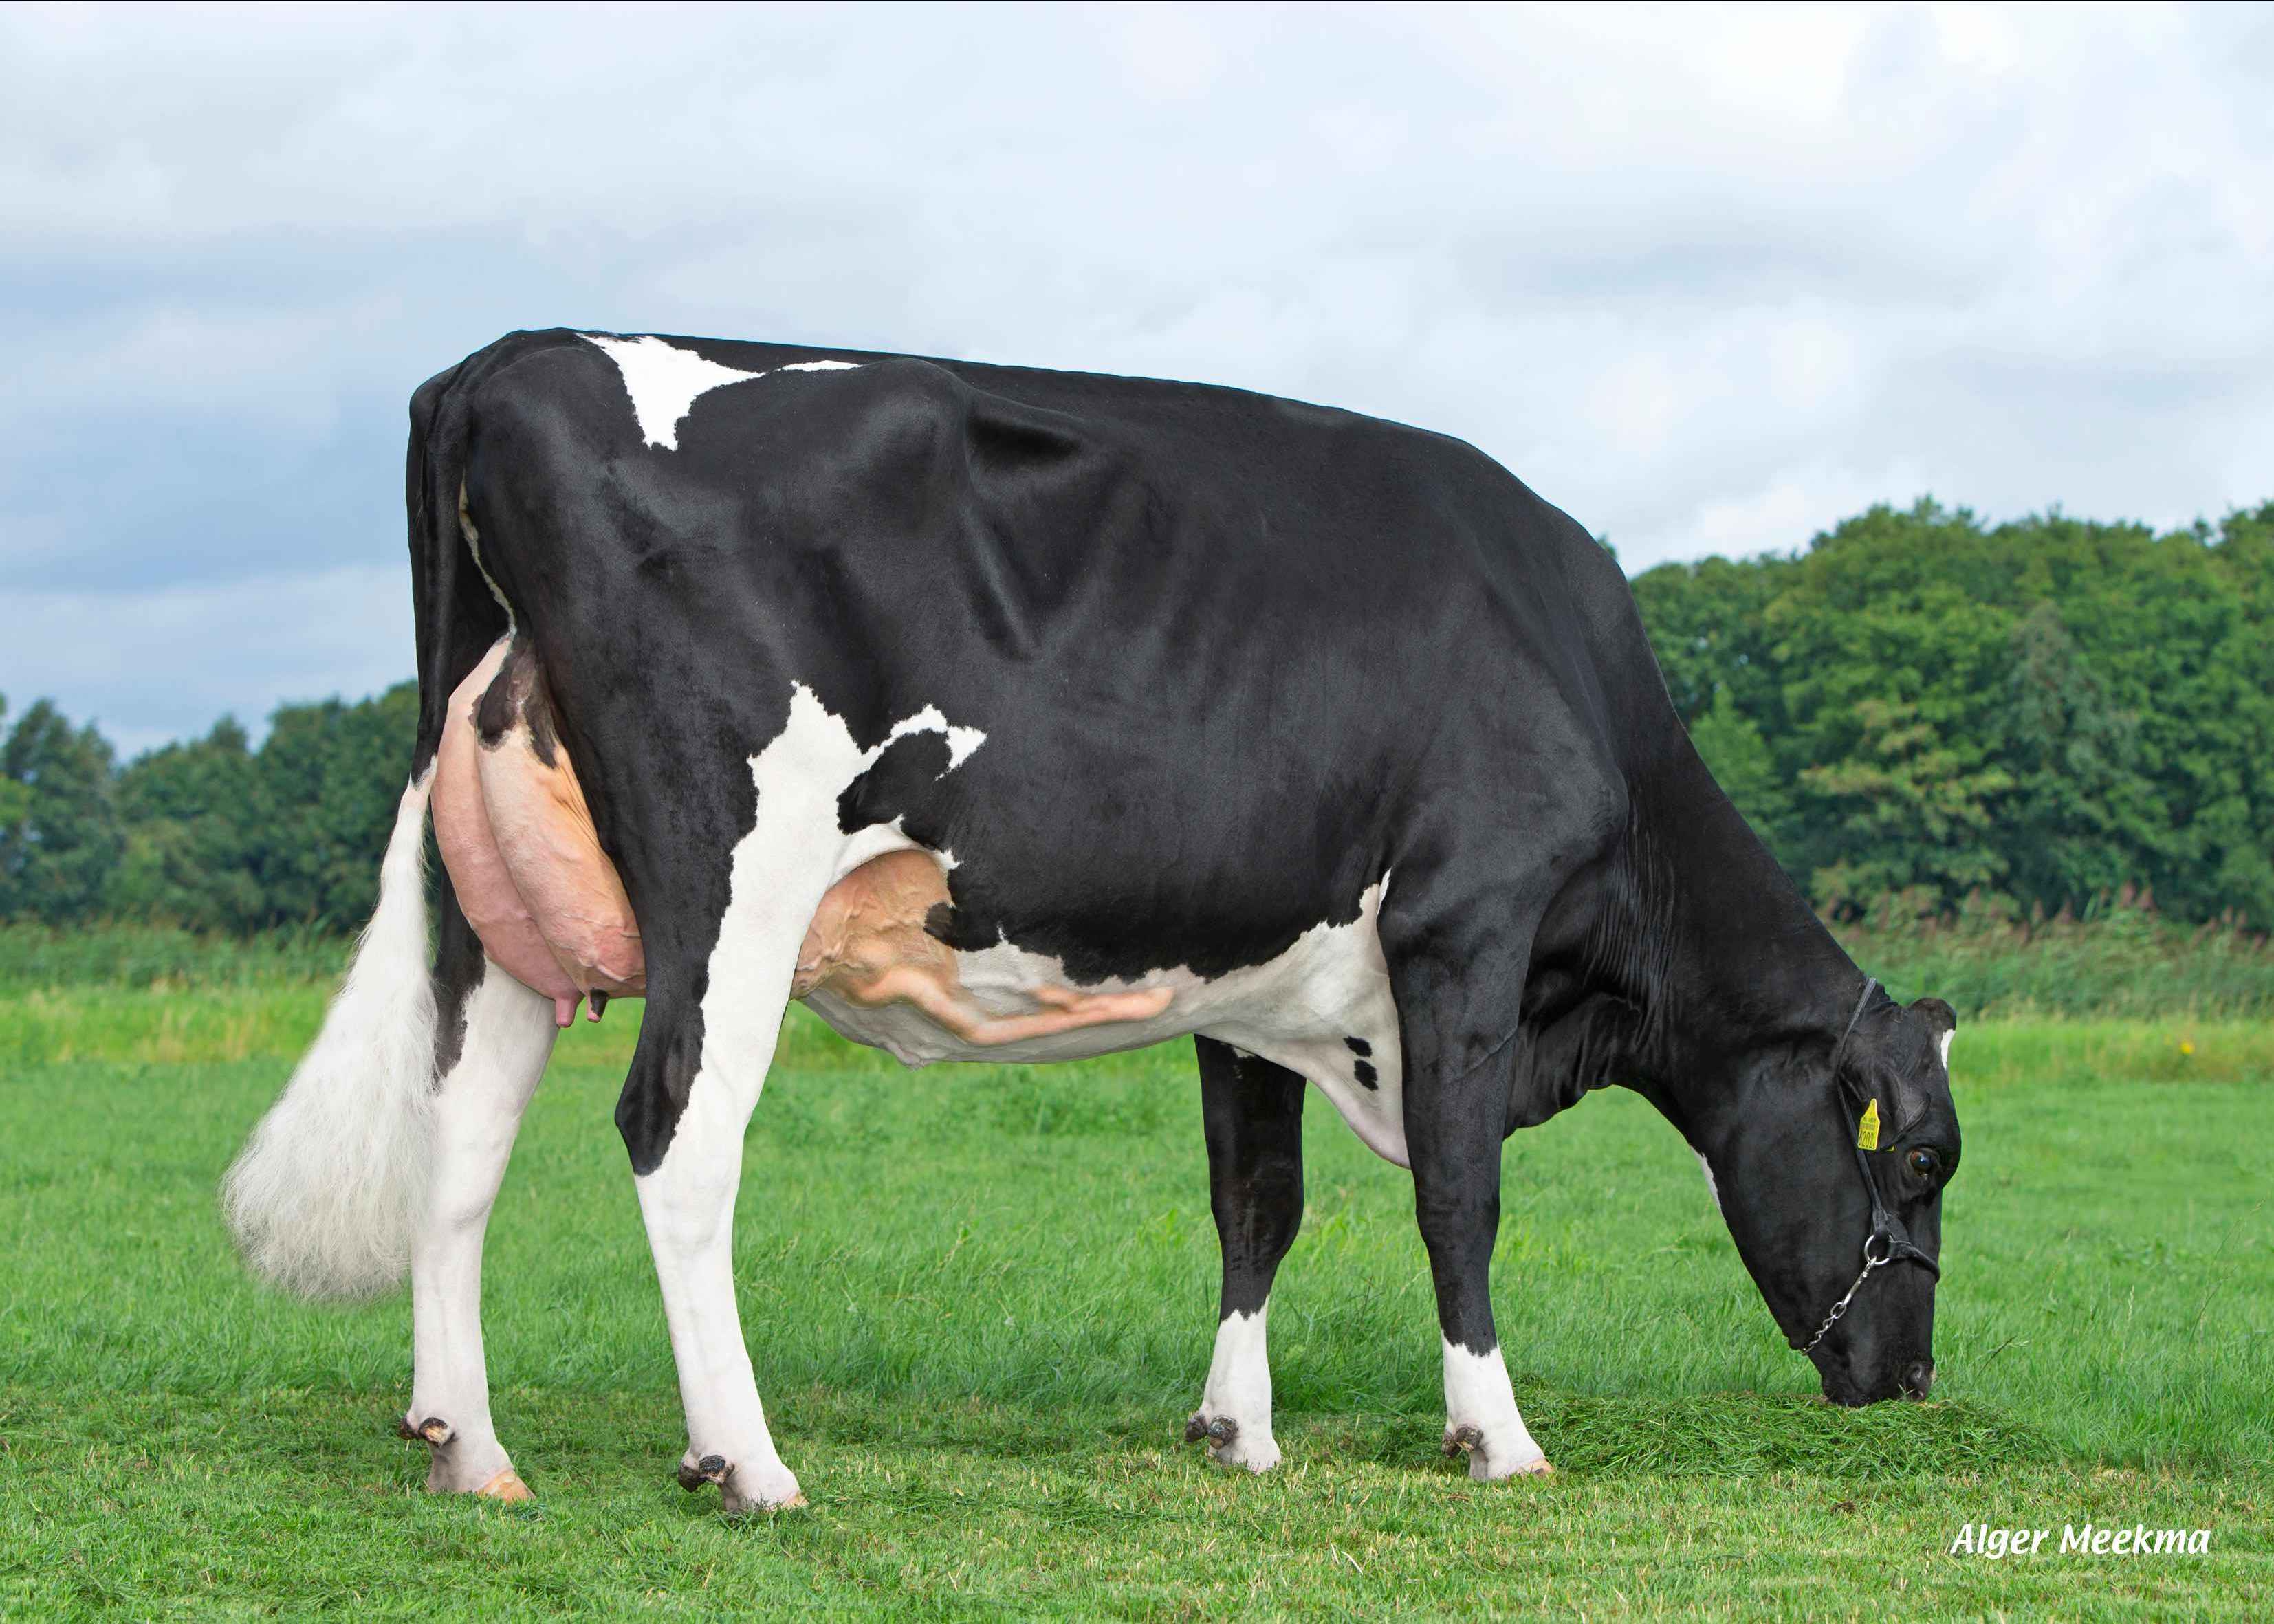 Carla 160 (second lactation) owner: Dairy farm De Groot VOF, Lierop